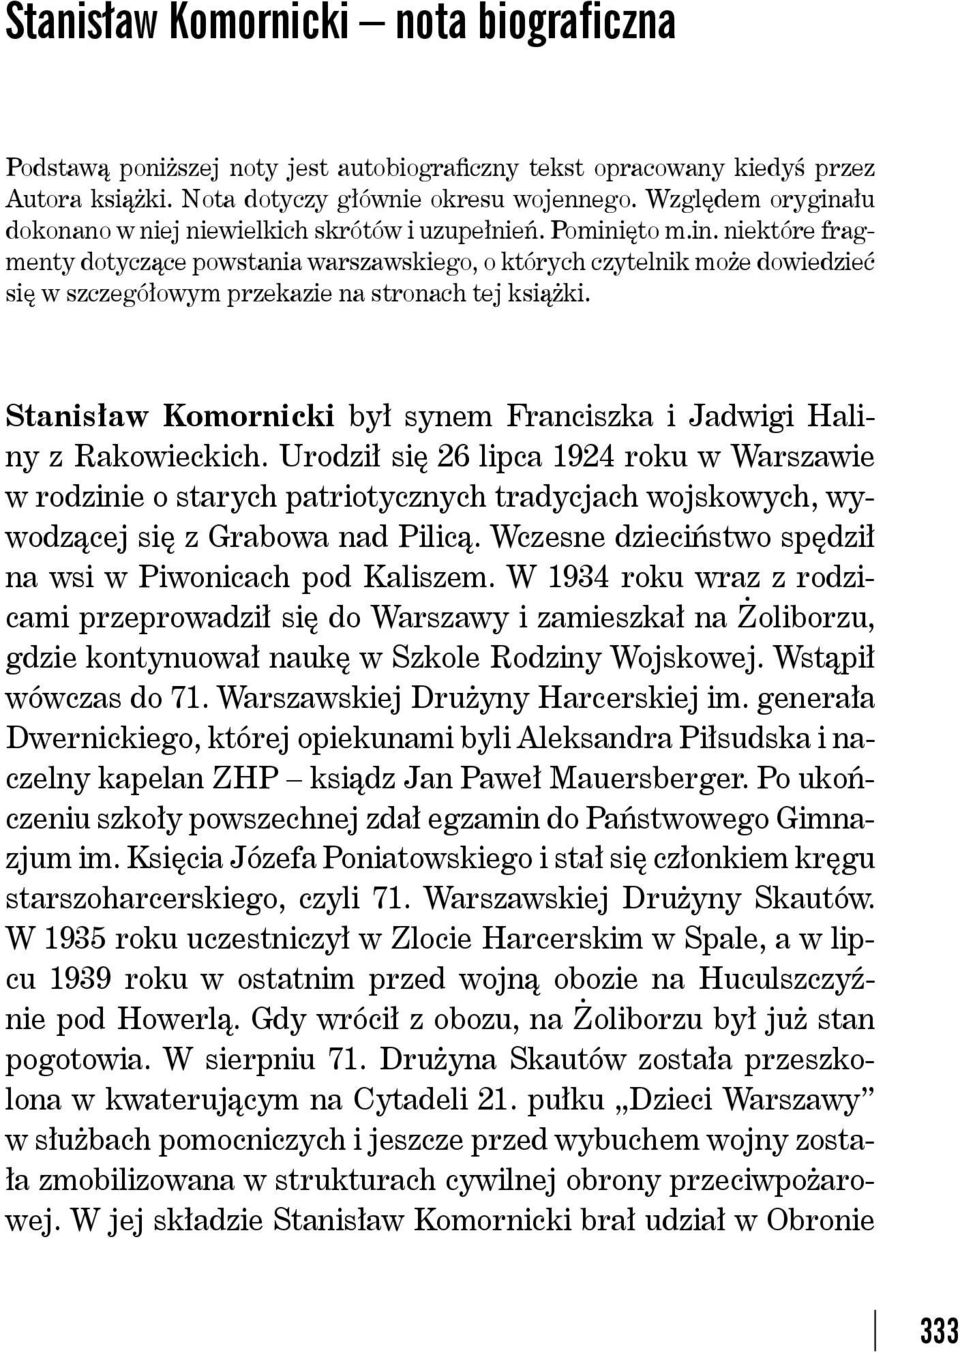 Stanisław Komornicki był synem Franciszka i Jadwigi Haliny z Rakowieckich.